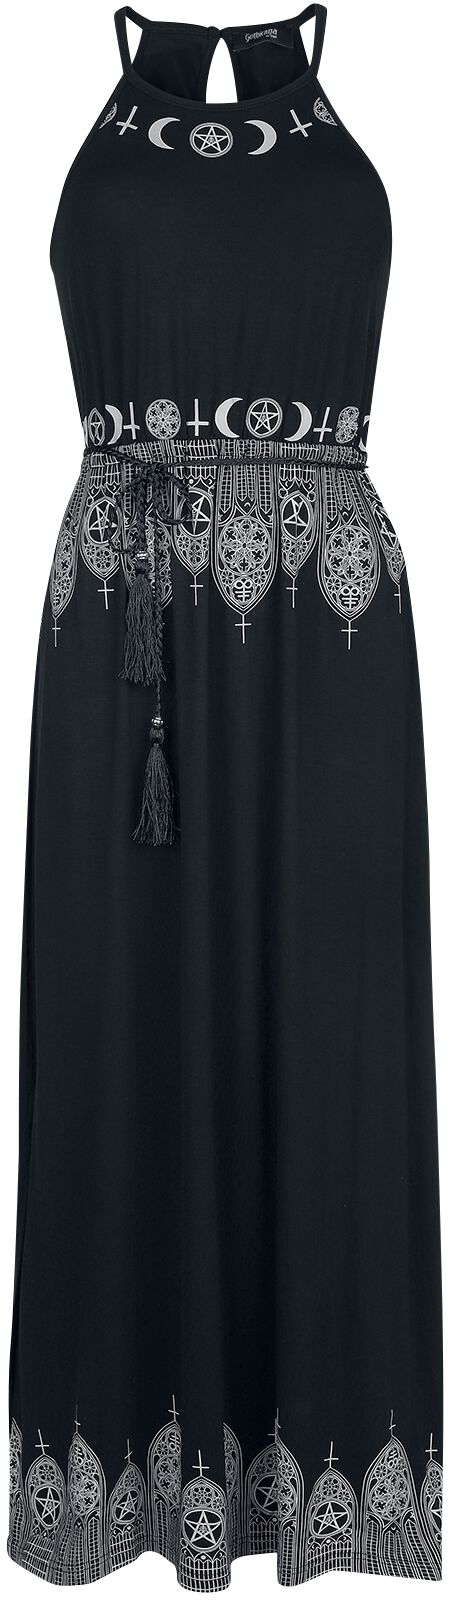 Gothicana by EMP - Gothic Kleid lang - Schwarzes Maxikleid mit Prints und schmalem Bindegürtel - S bis 5XL - für Damen - Größe M - schwarz